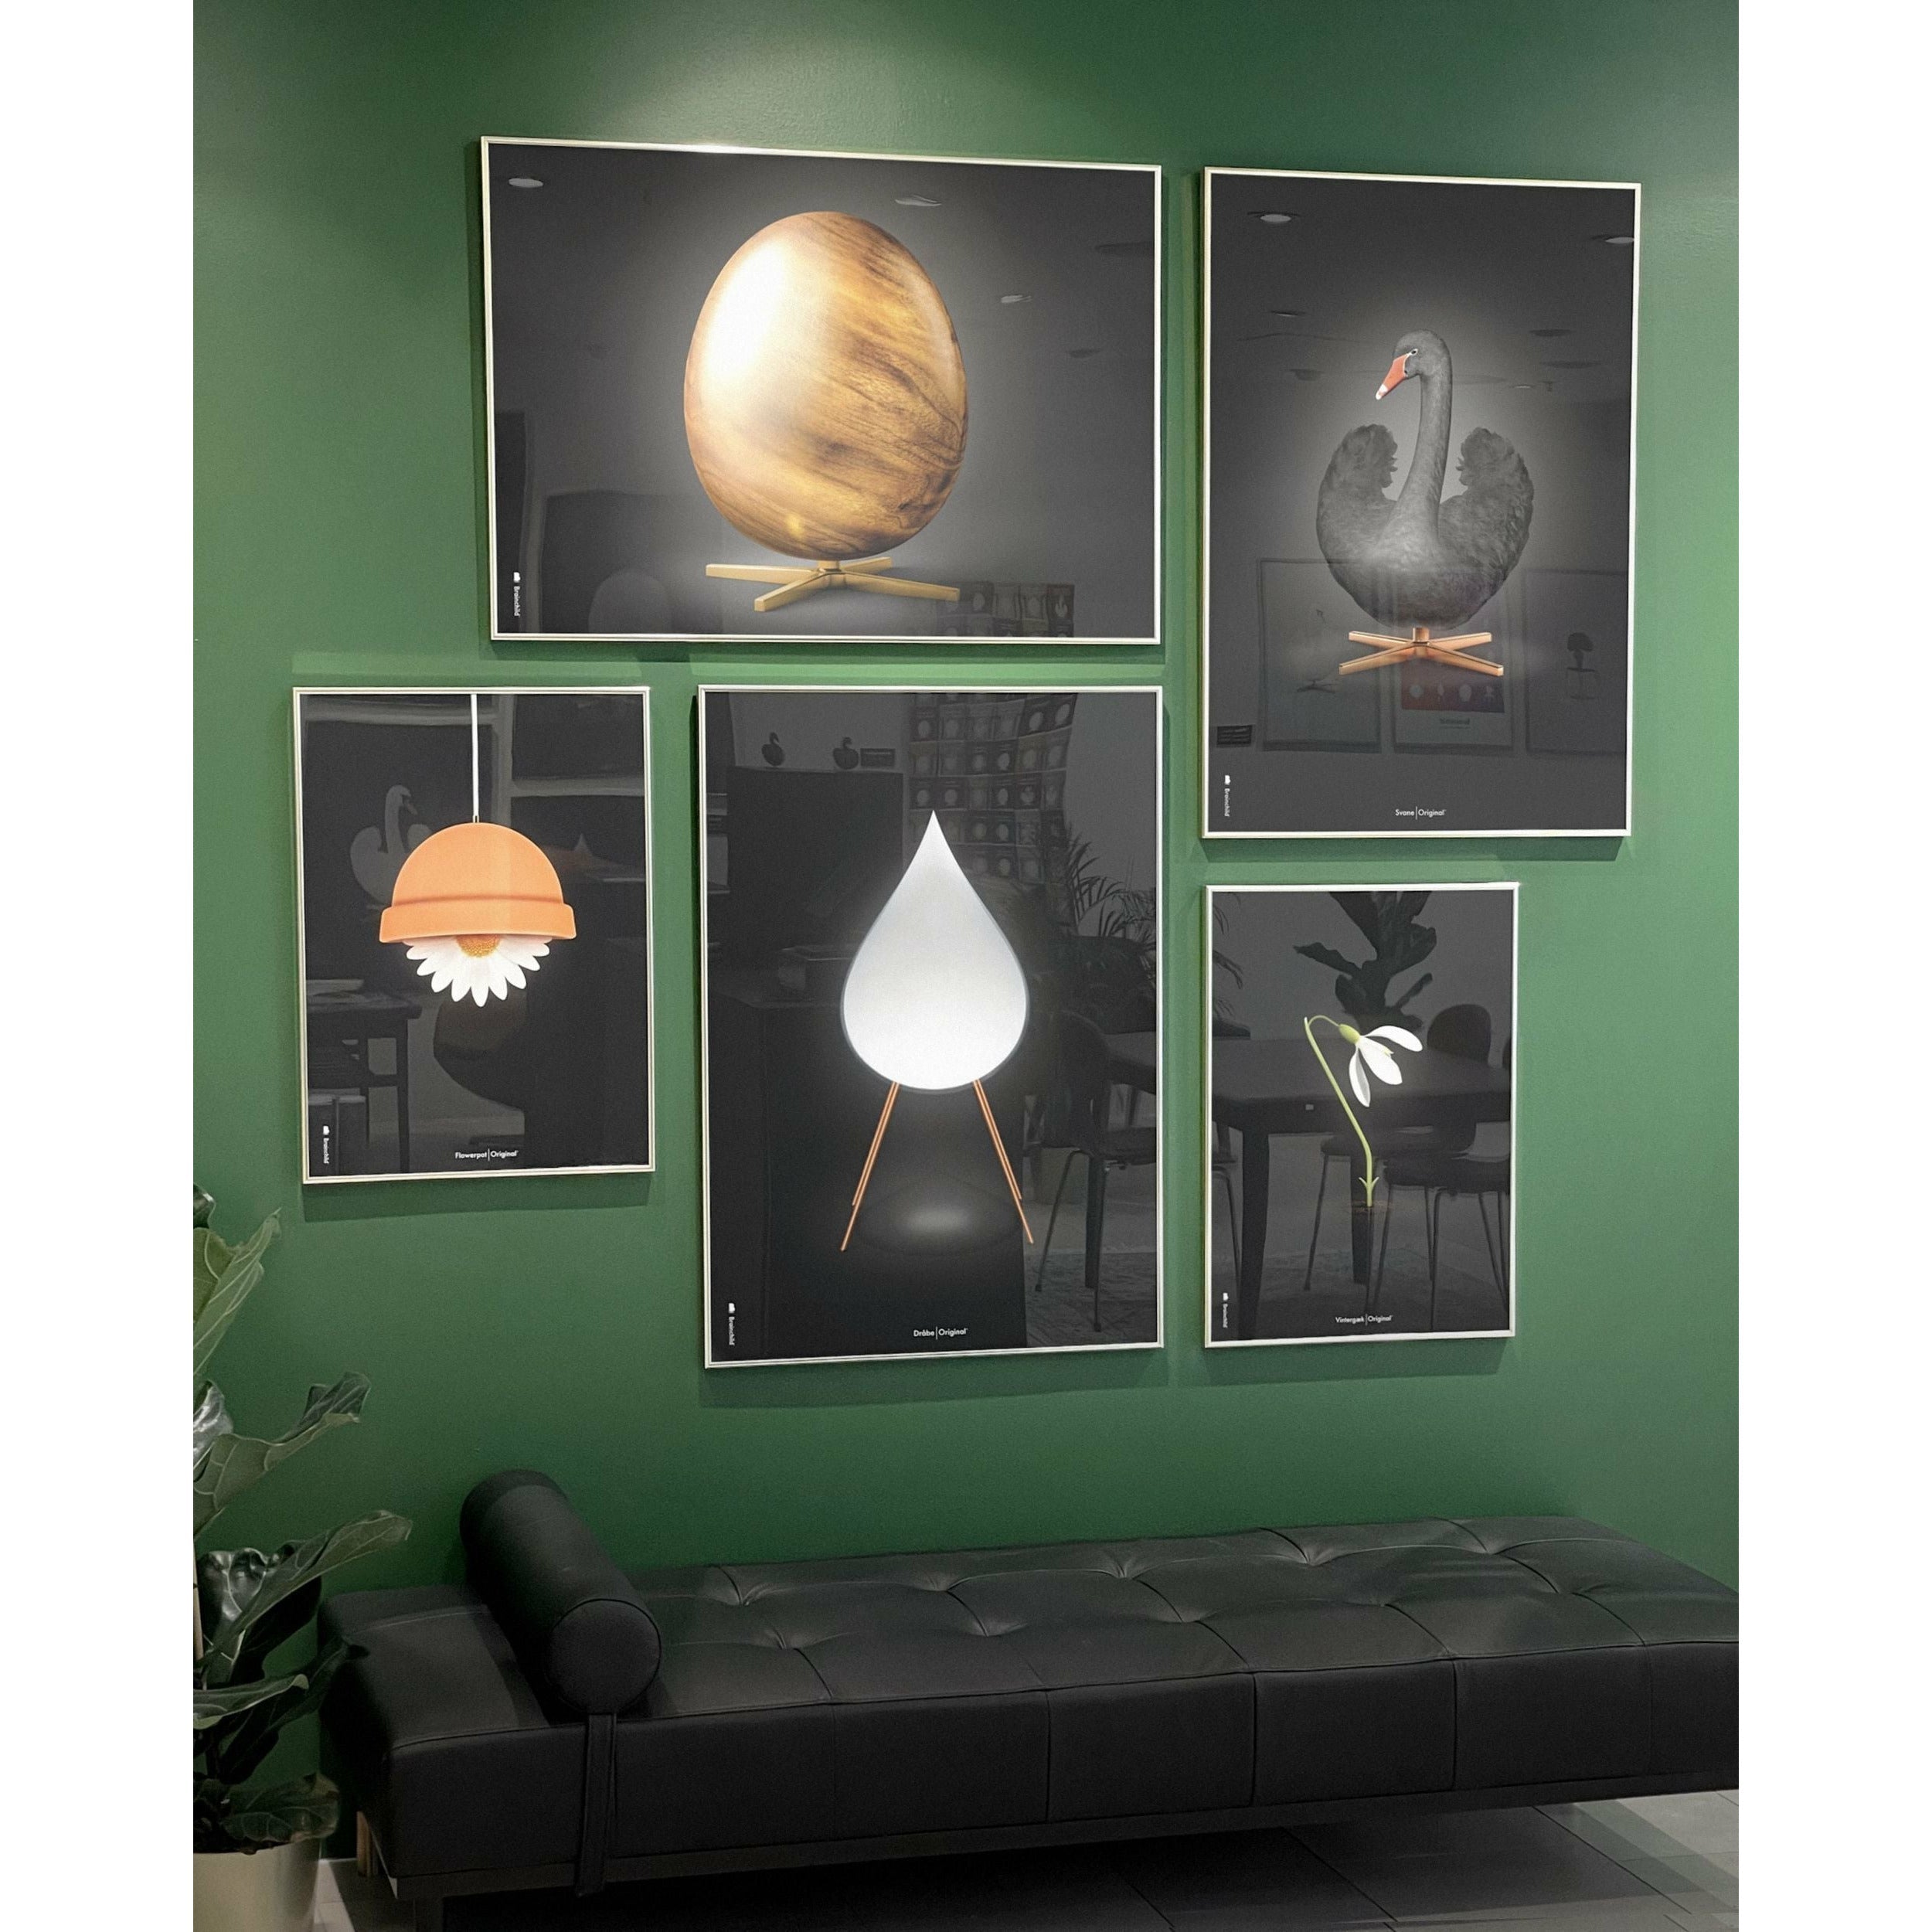 Brainchild Egg Cross Format Poster, Frame In Black Lacquered Wood 50x70 Cm, Black